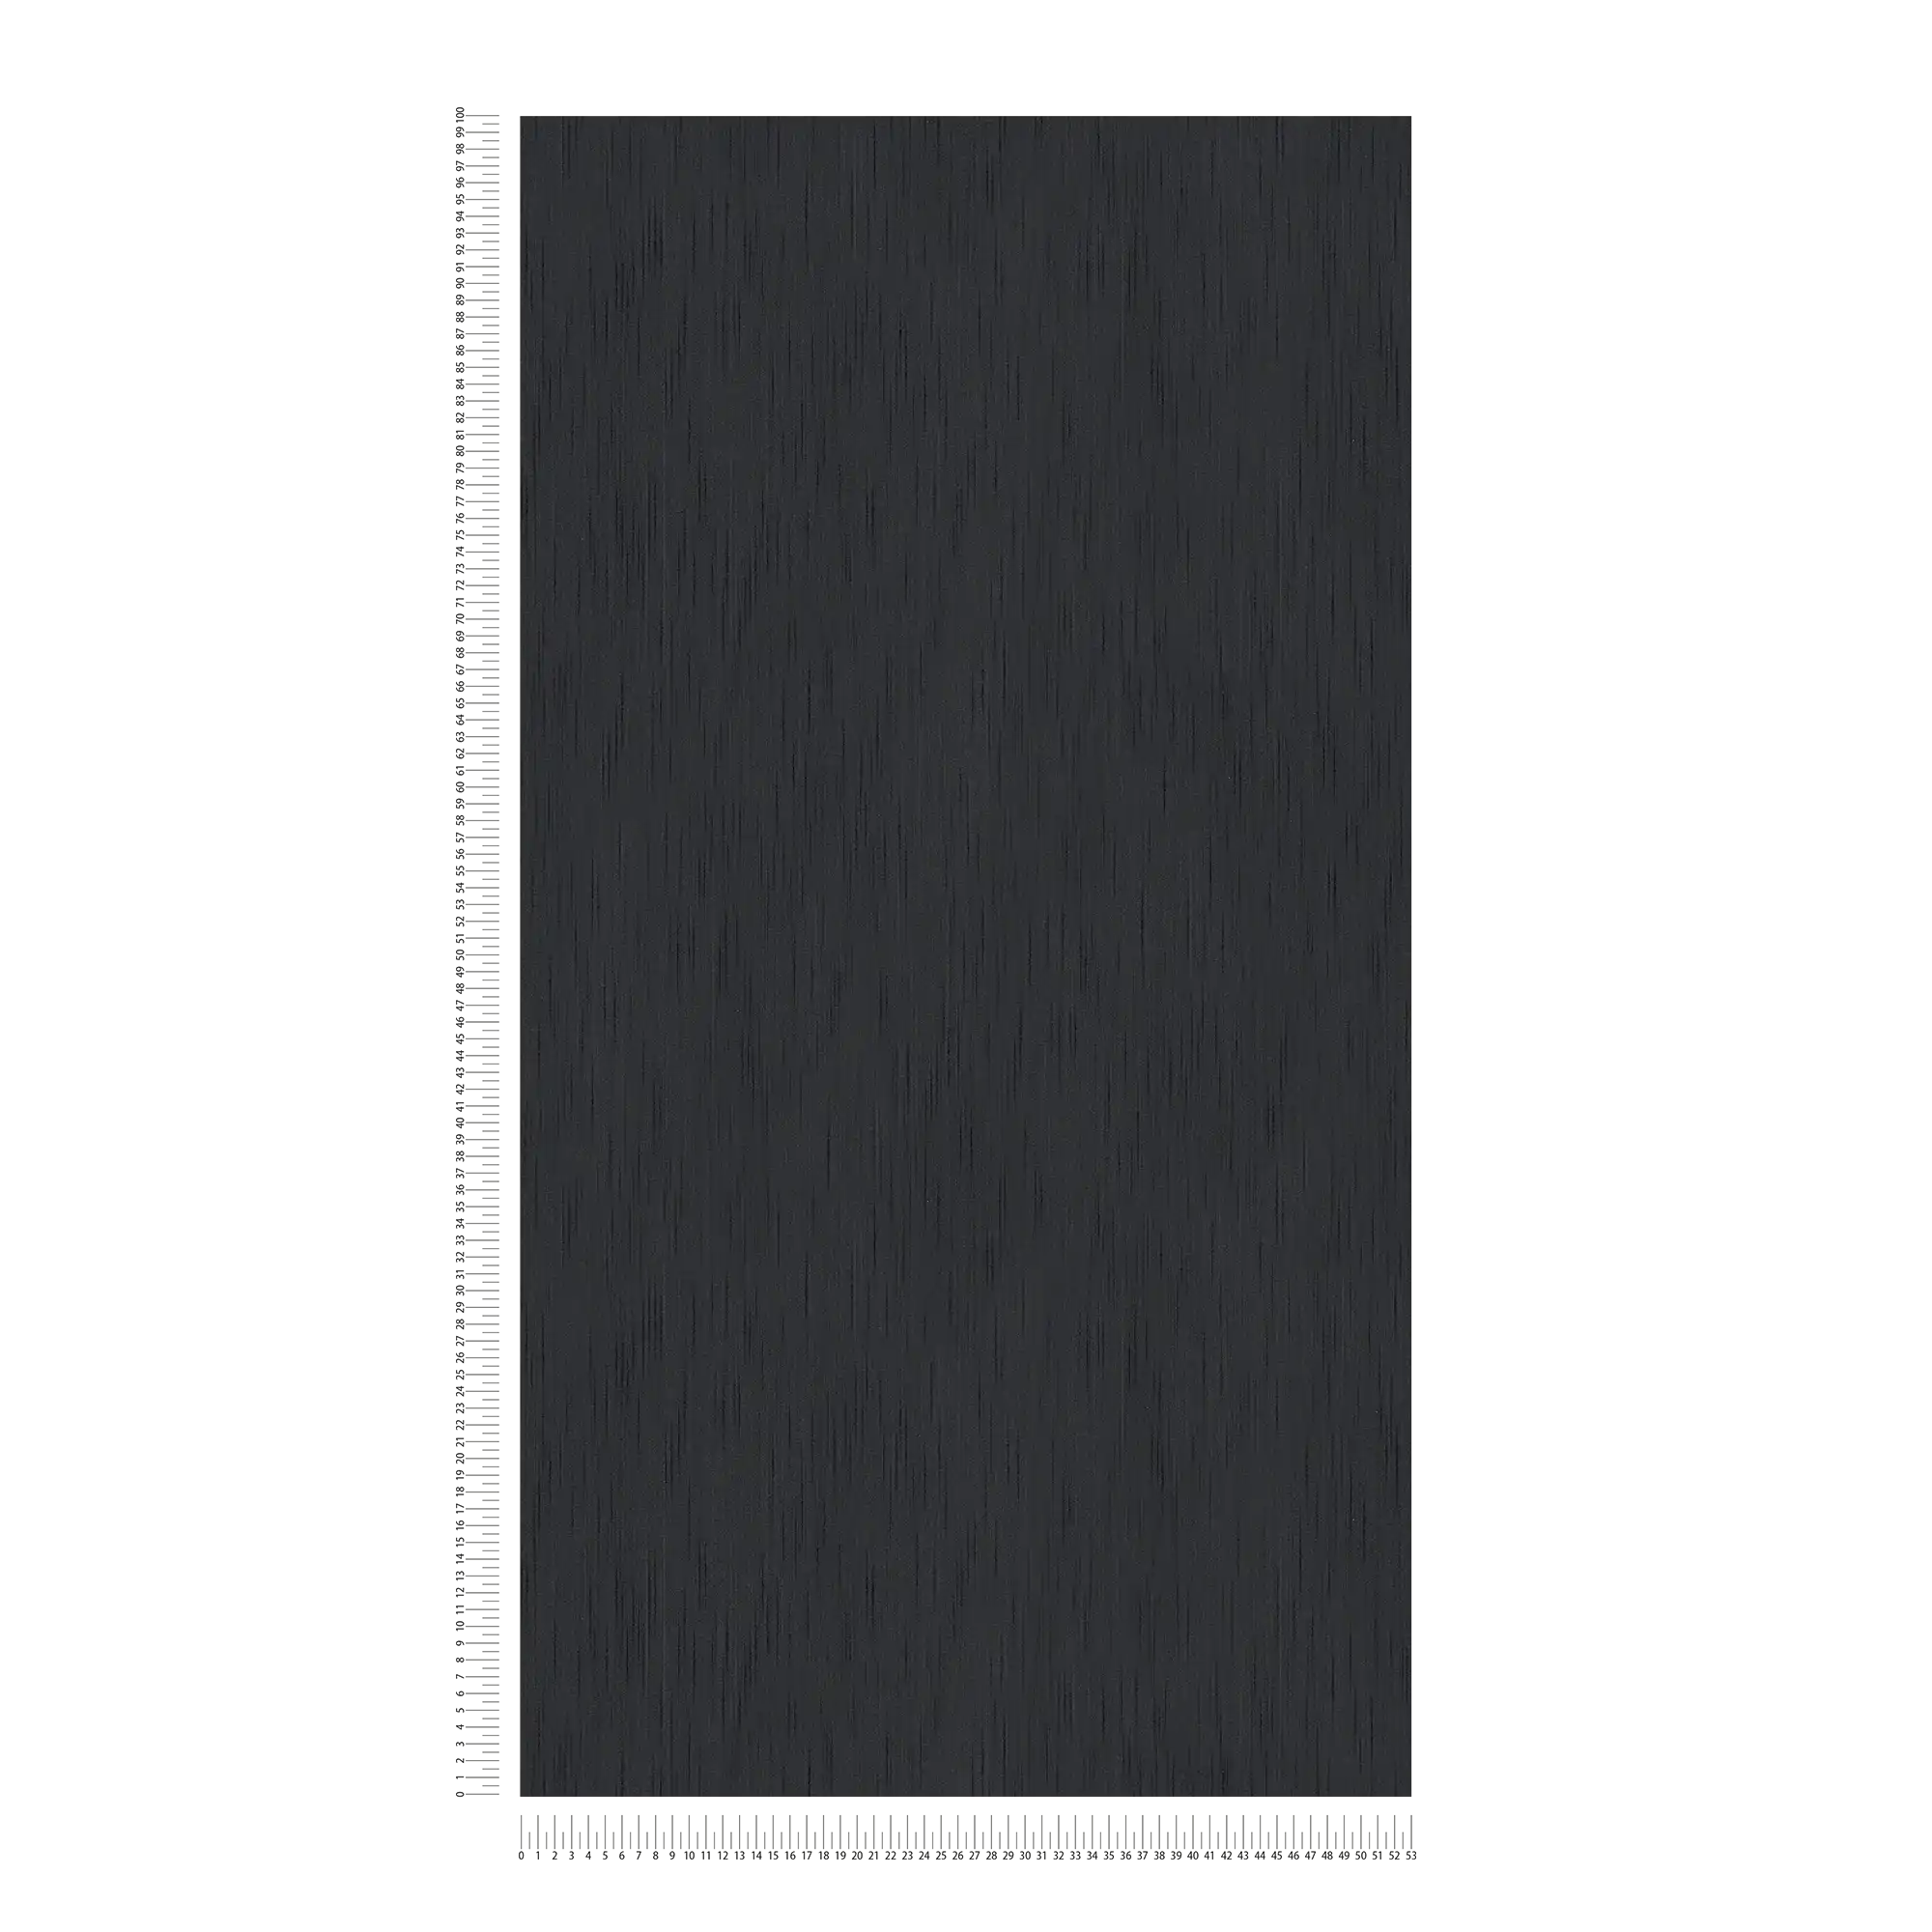             Papel pintado de seda negra con estructura textil y efecto moteado
        